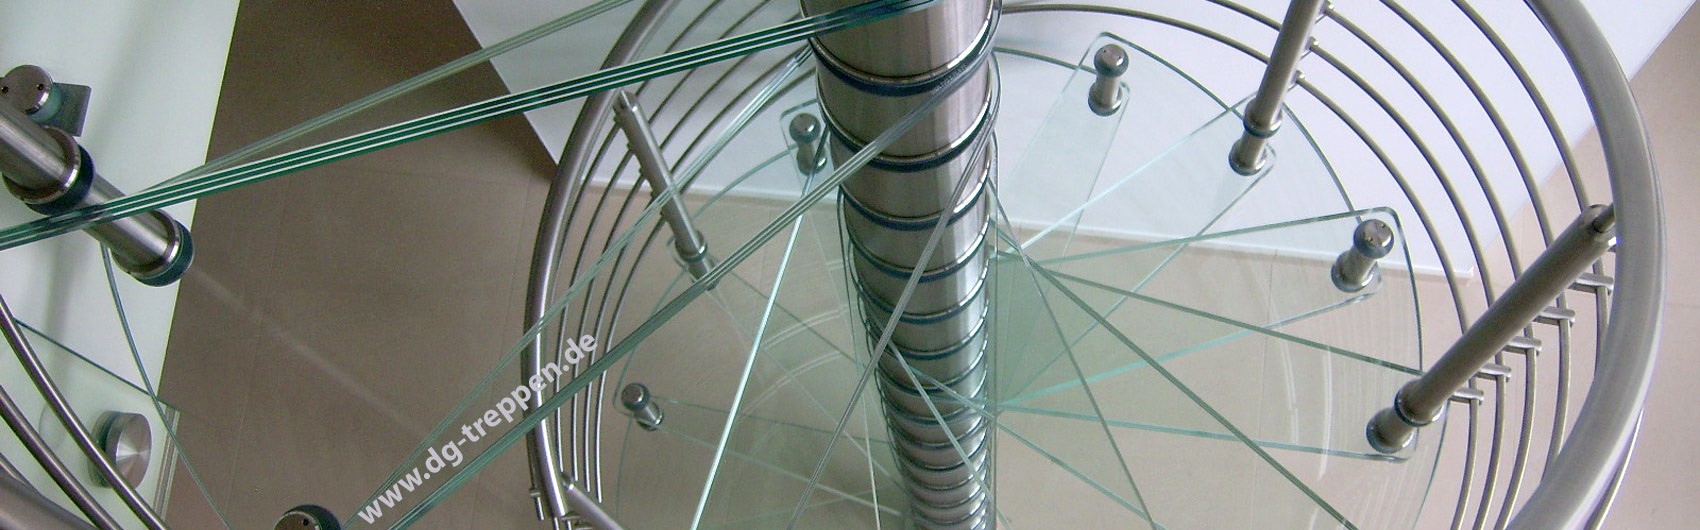 Stufe für Stufe - Ihre Treppe nach oben, elegant in Glas